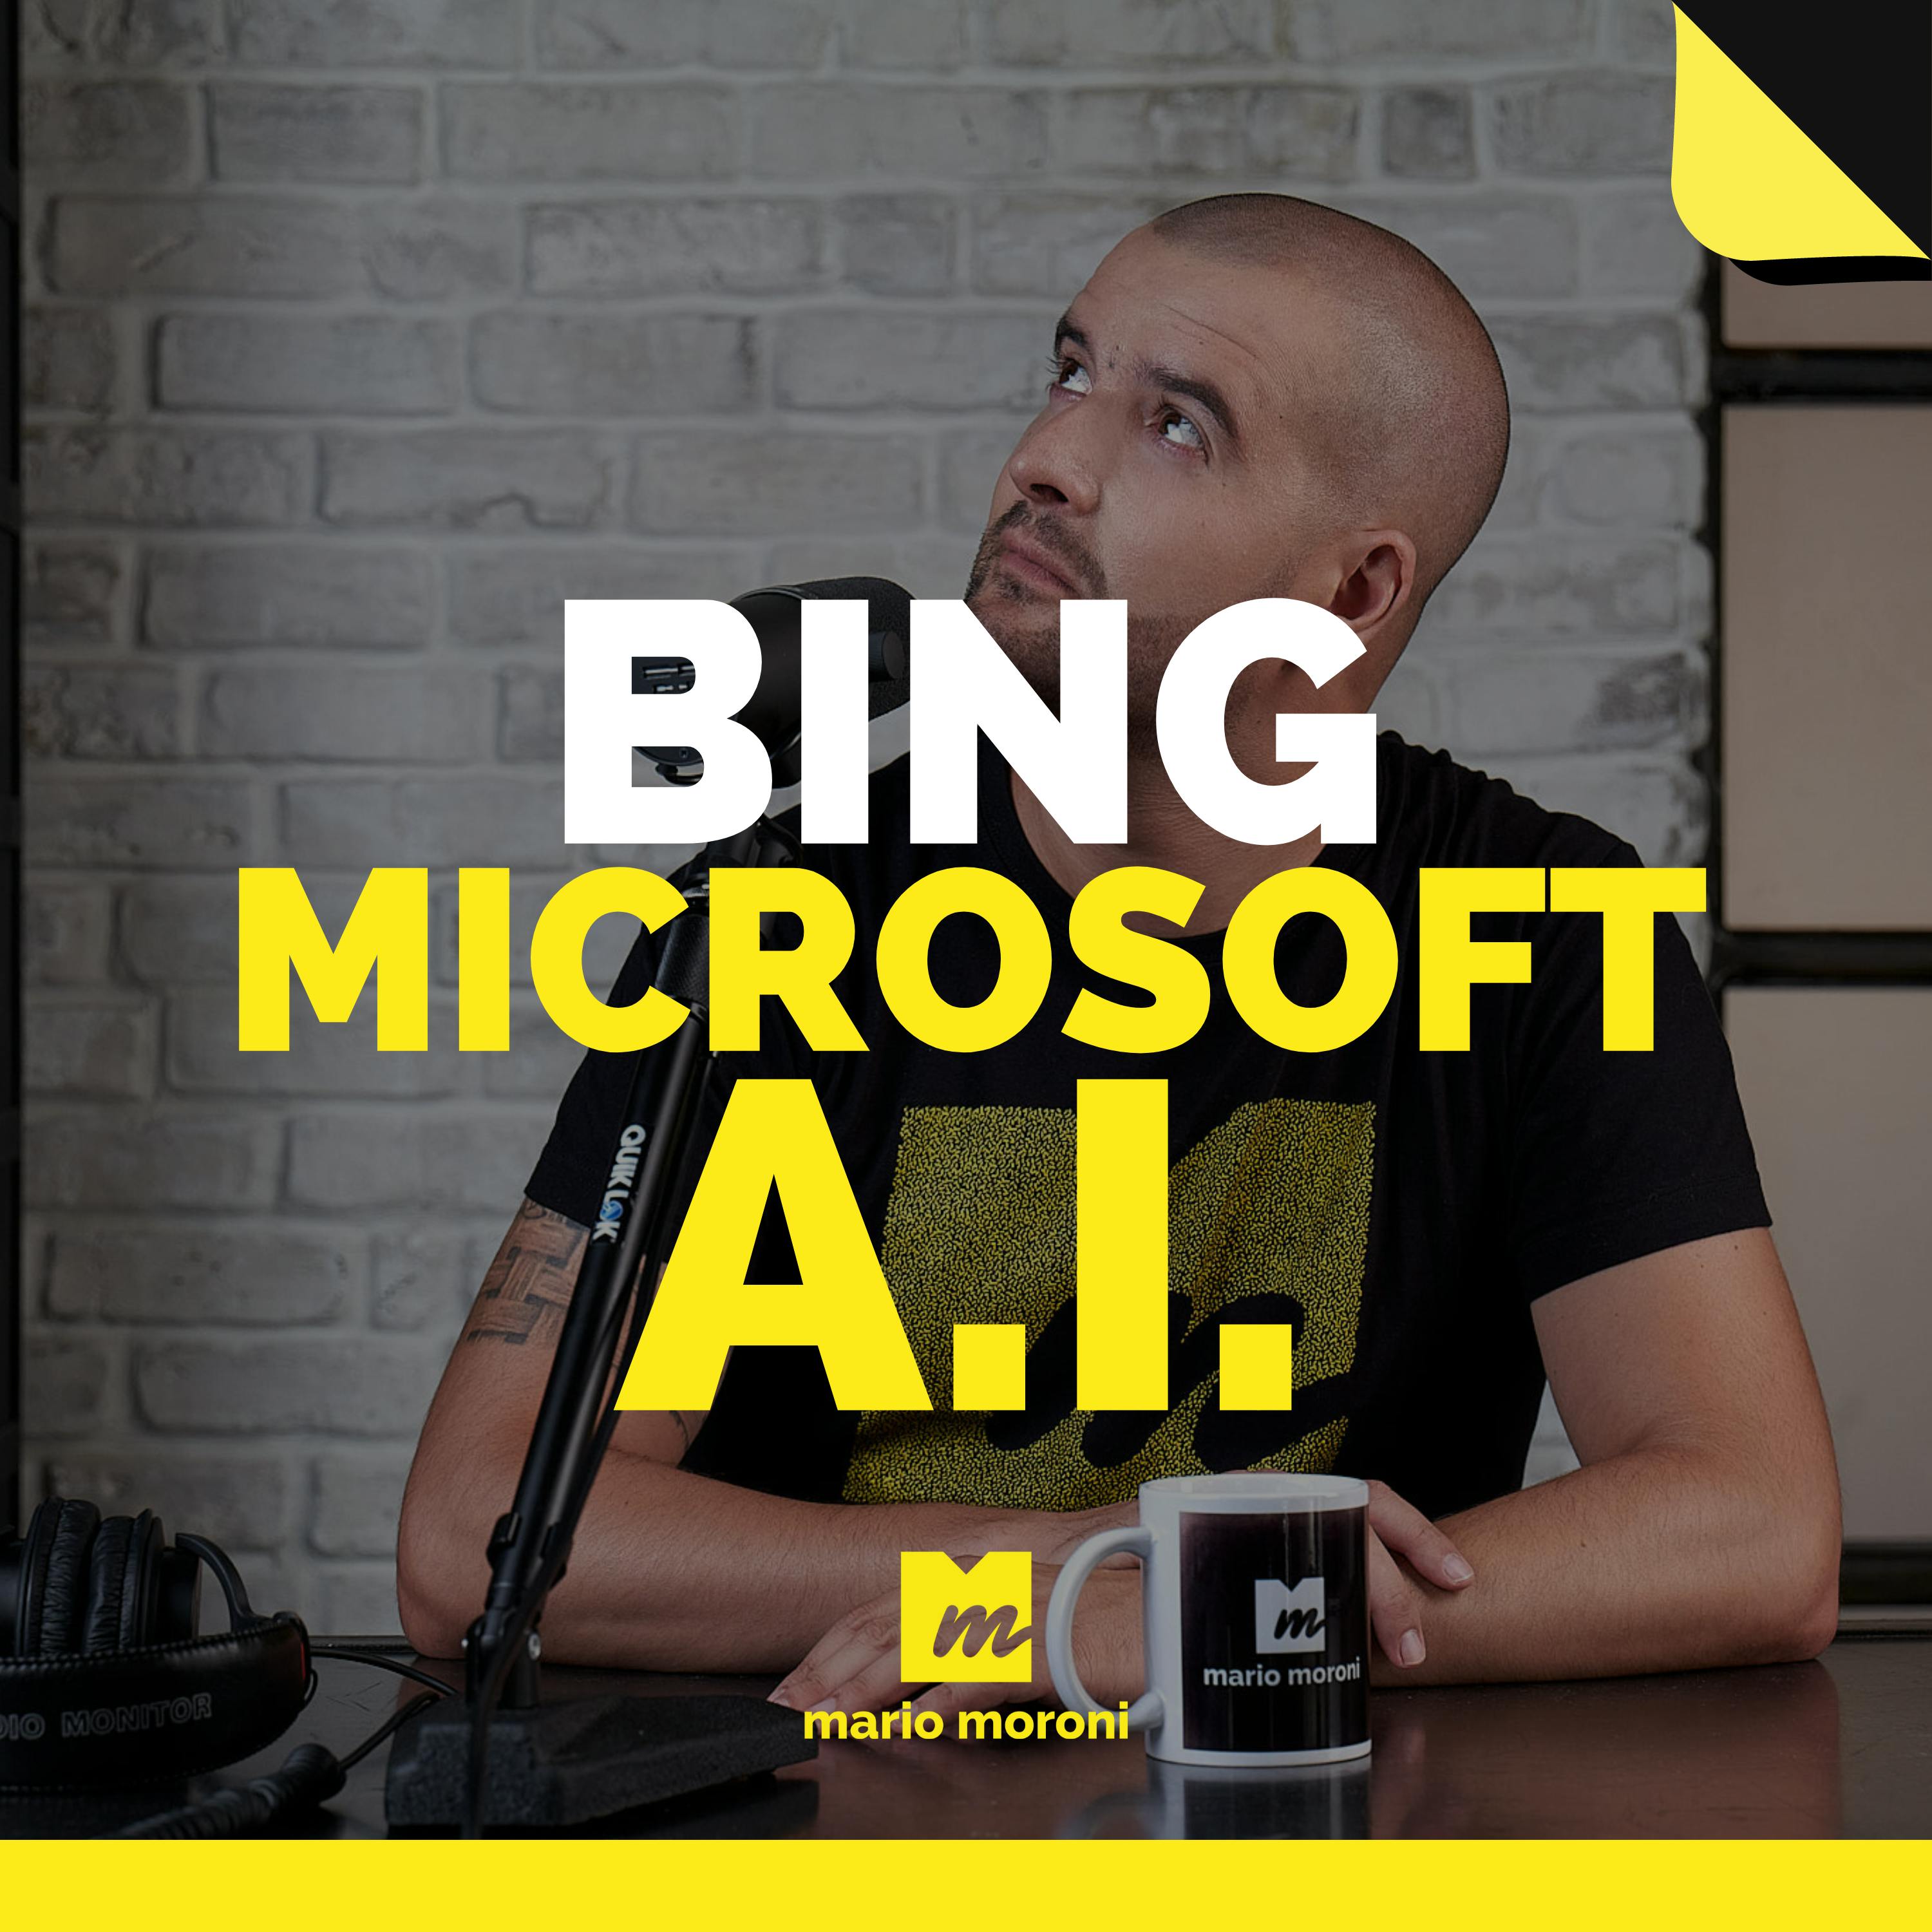 Microsoft integra l'intelligenza artificiale nel proprio motore di ricerca Bing